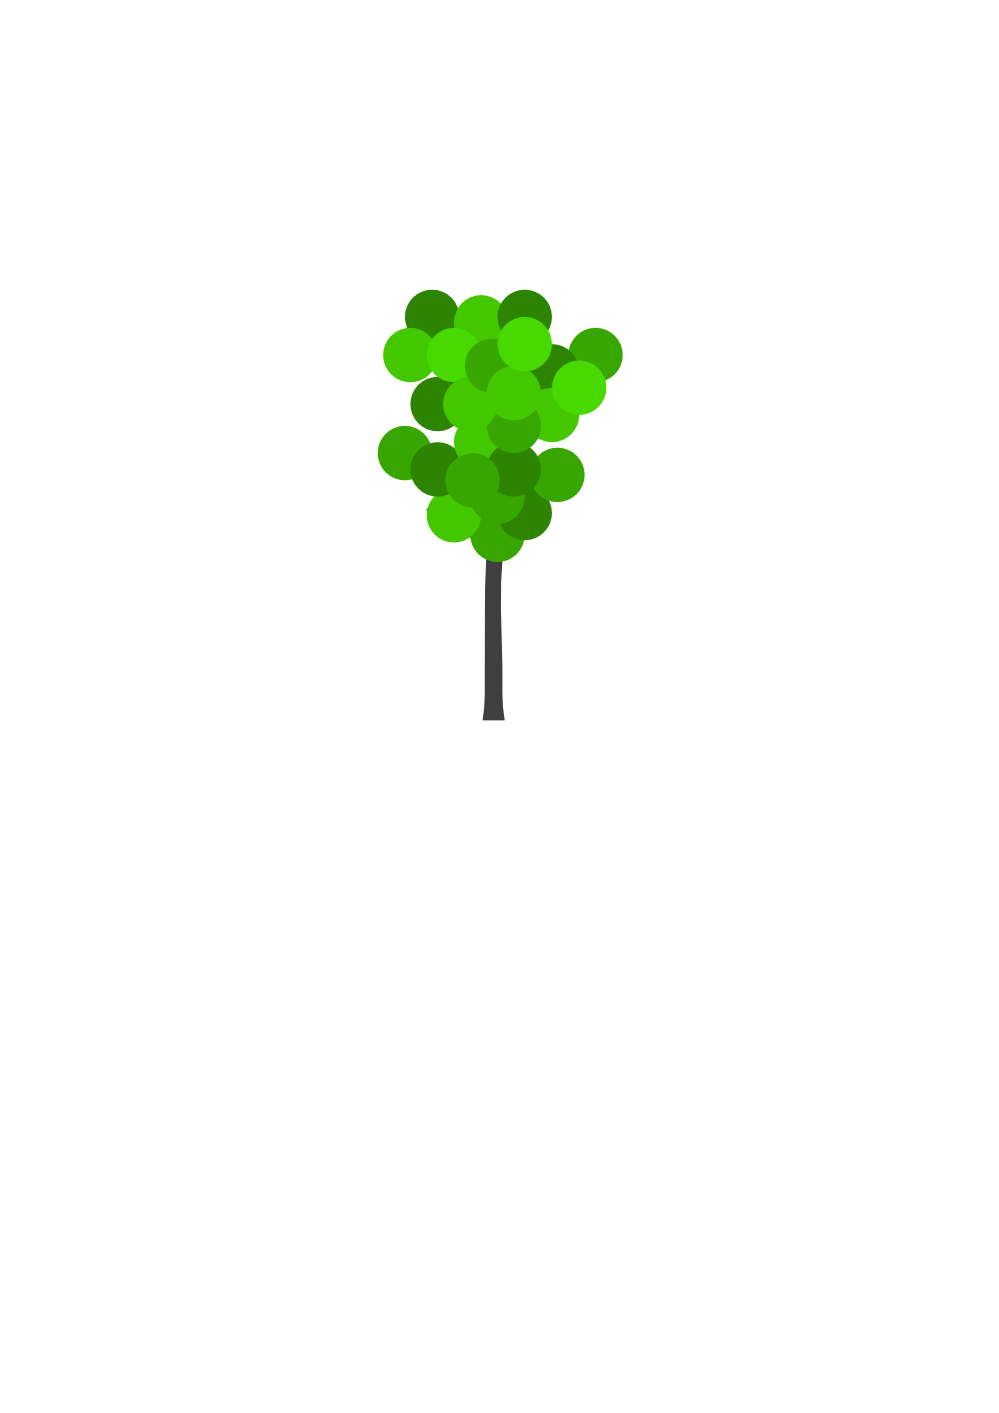 Clip Art: Plant Cartoon Tree 1 xochi.info twee ...